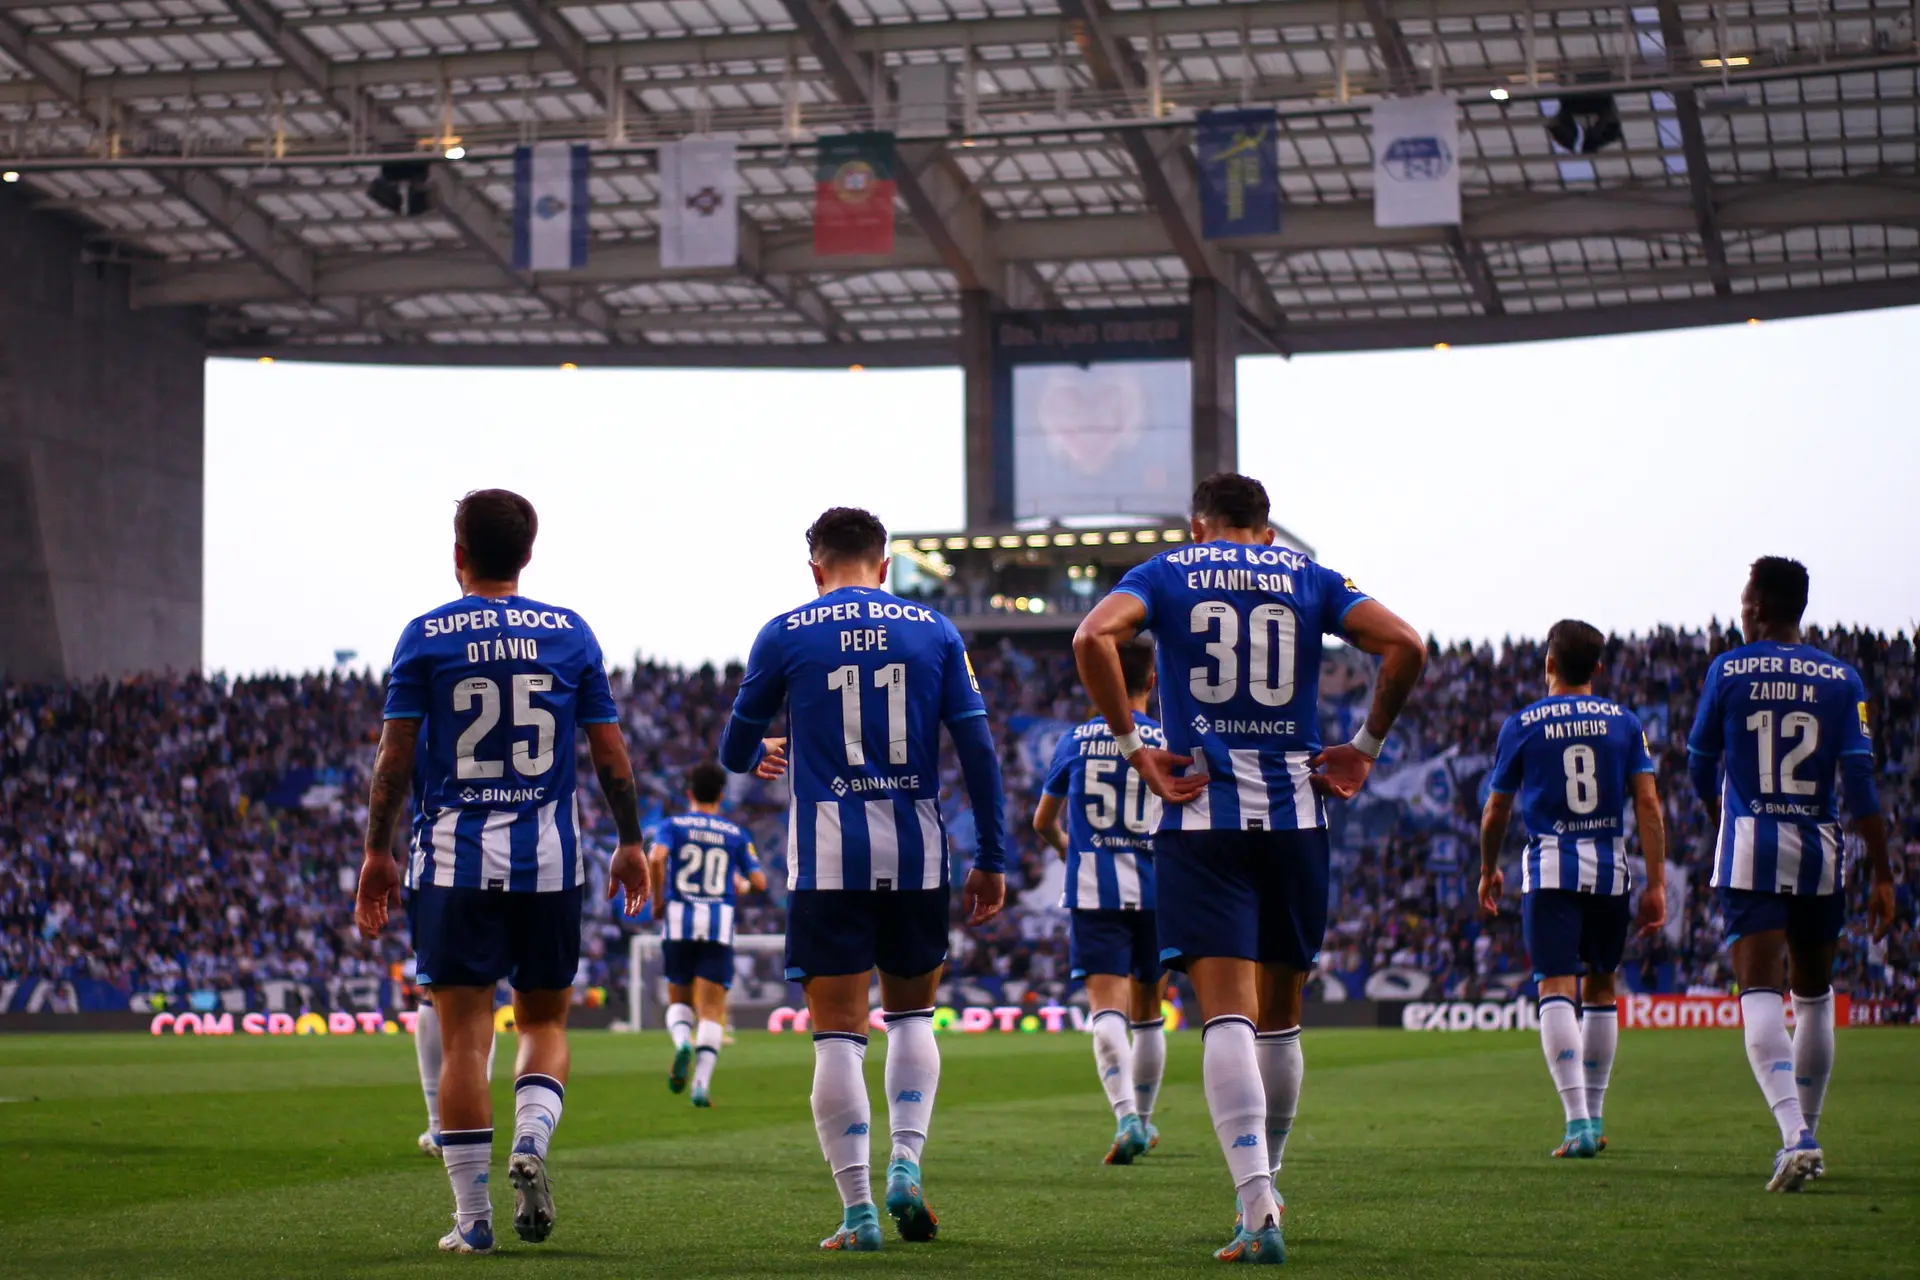 FC Porto - Paixão em campo 💪 Azul e branco em ação💙 Hoje